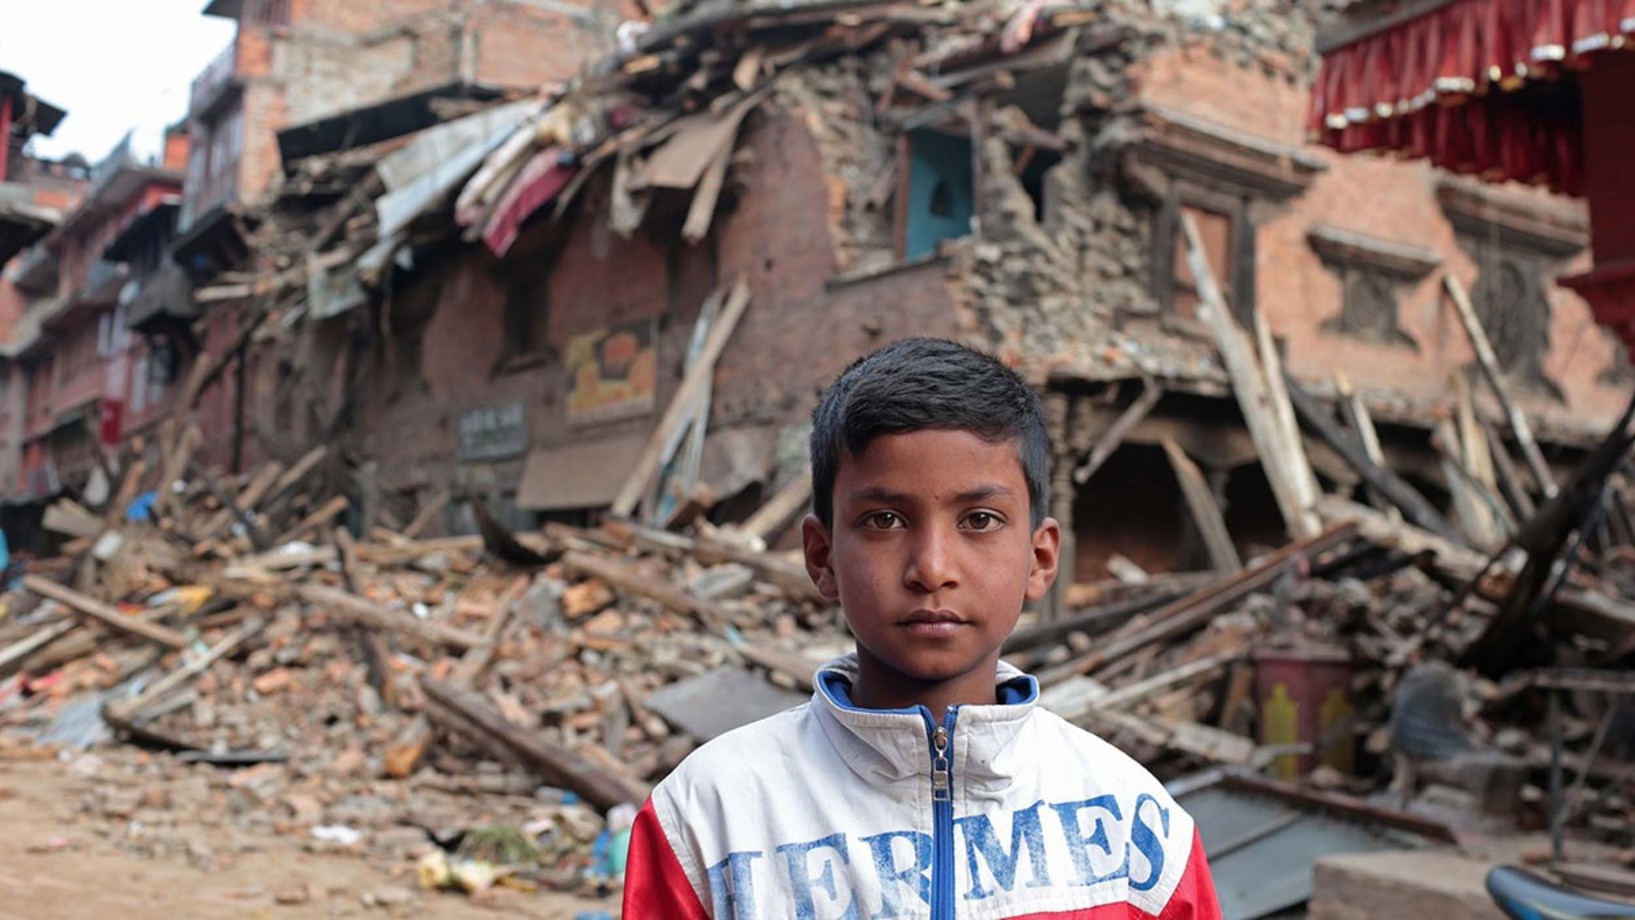 Zerstörung in Nepal nach Erdbeben